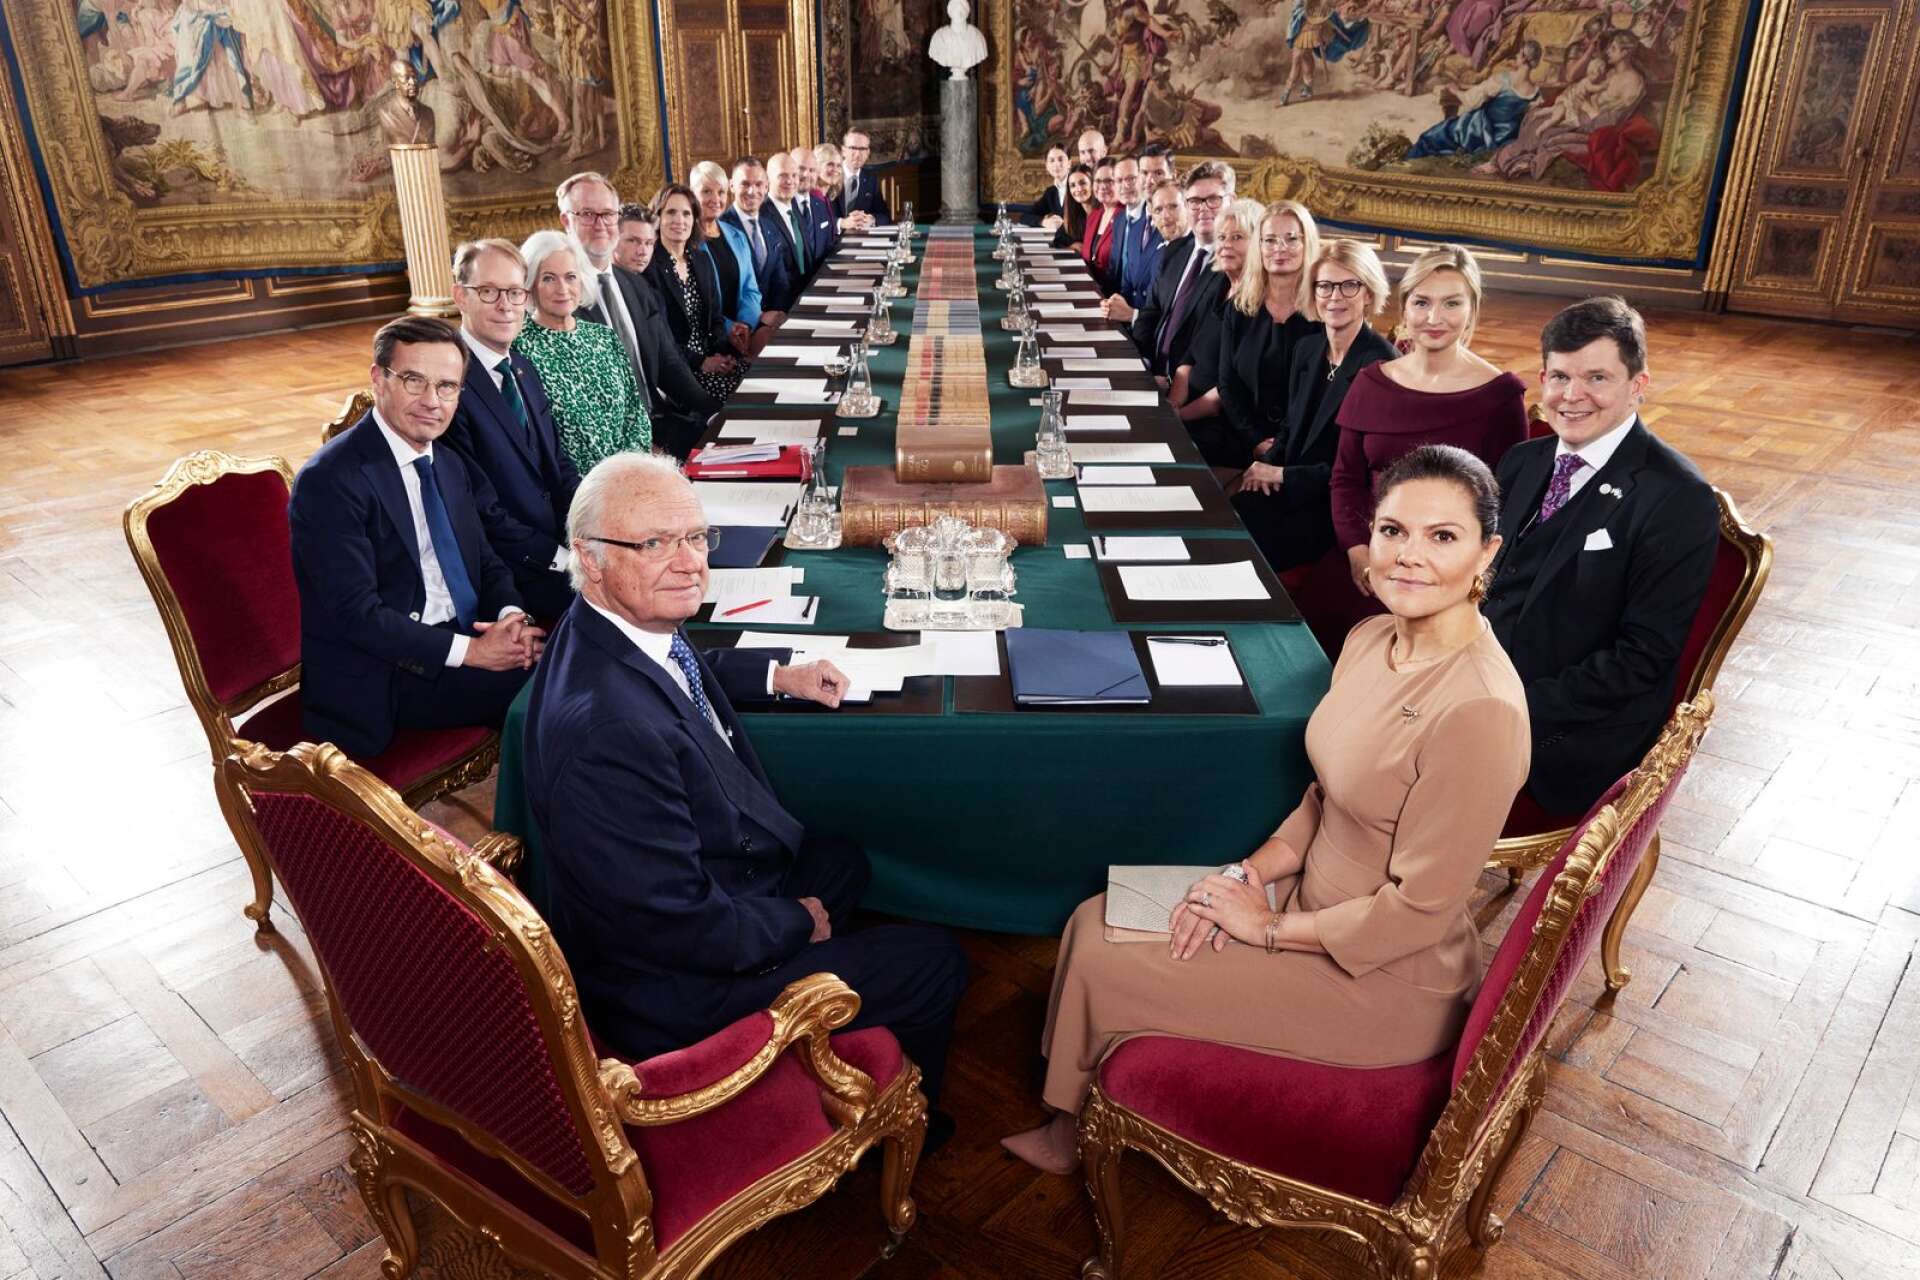 Pål Jonson, Arvika, på konselj med den nya regeringen hos Kung Carl Gustaf och Kronprinsessan Victoria. Jonson ses som femte person på den vänstra bordssidan. 